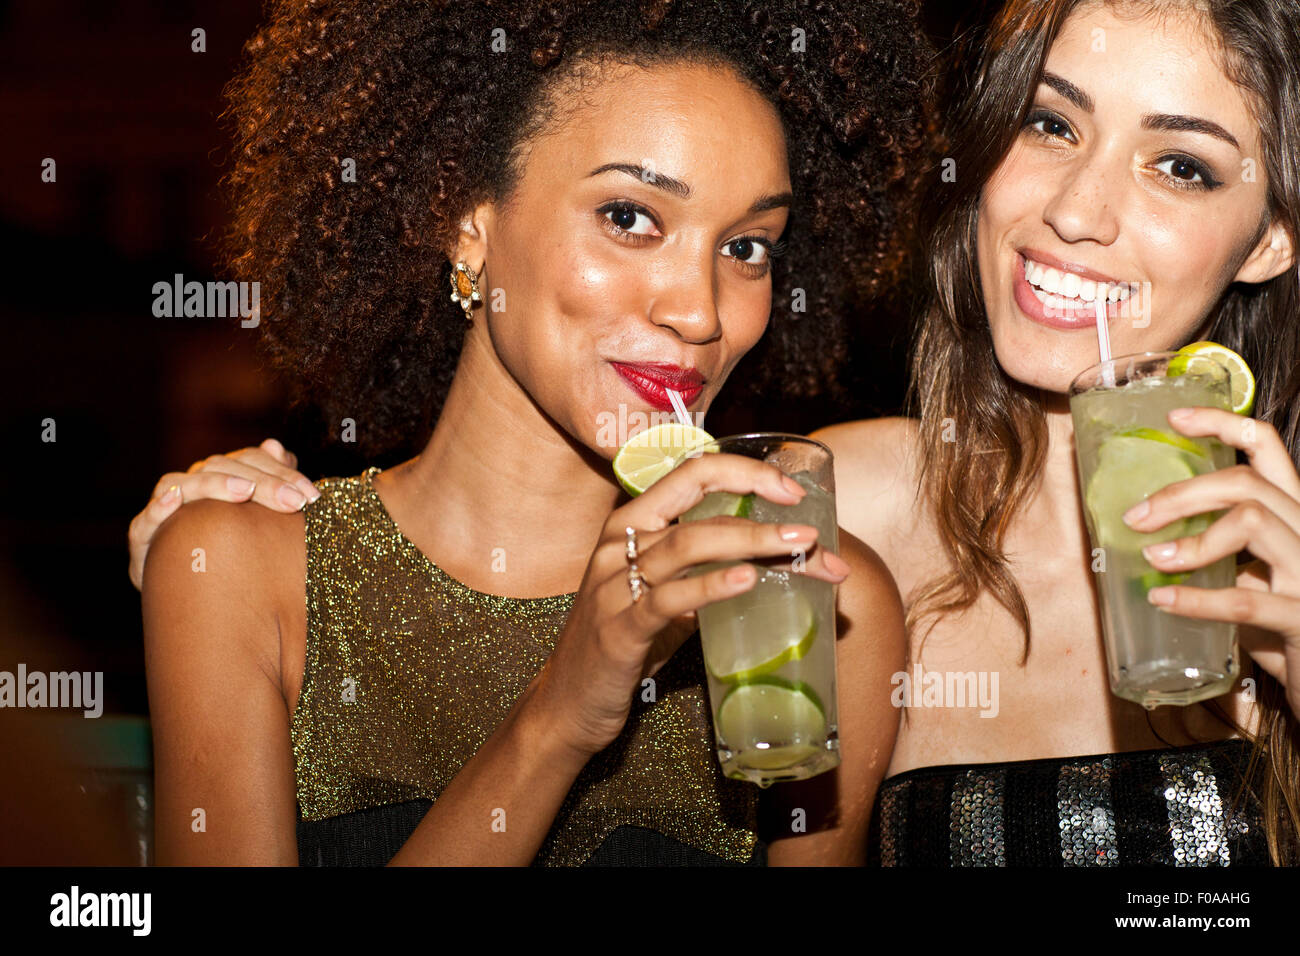 Zwei Junge Frauen Zusammen In Bar Trinken Lächeln Stockfotografie Alamy 